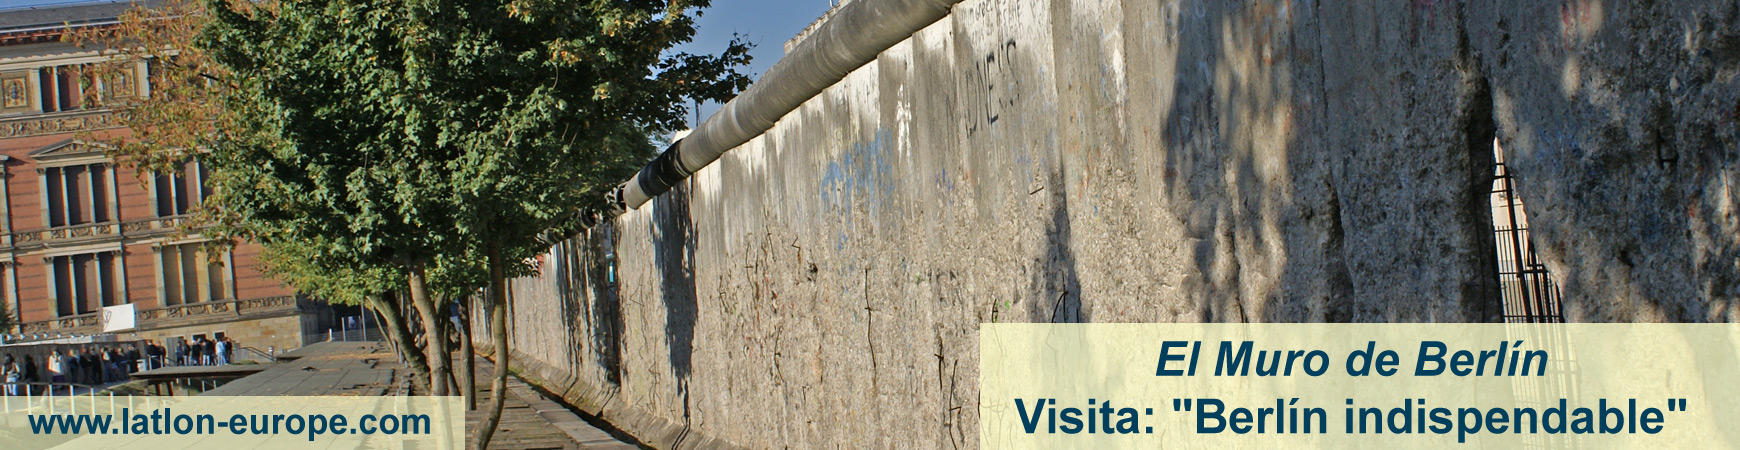 Visitas: "Berlin indispendable" o "El Muro de Berlin"